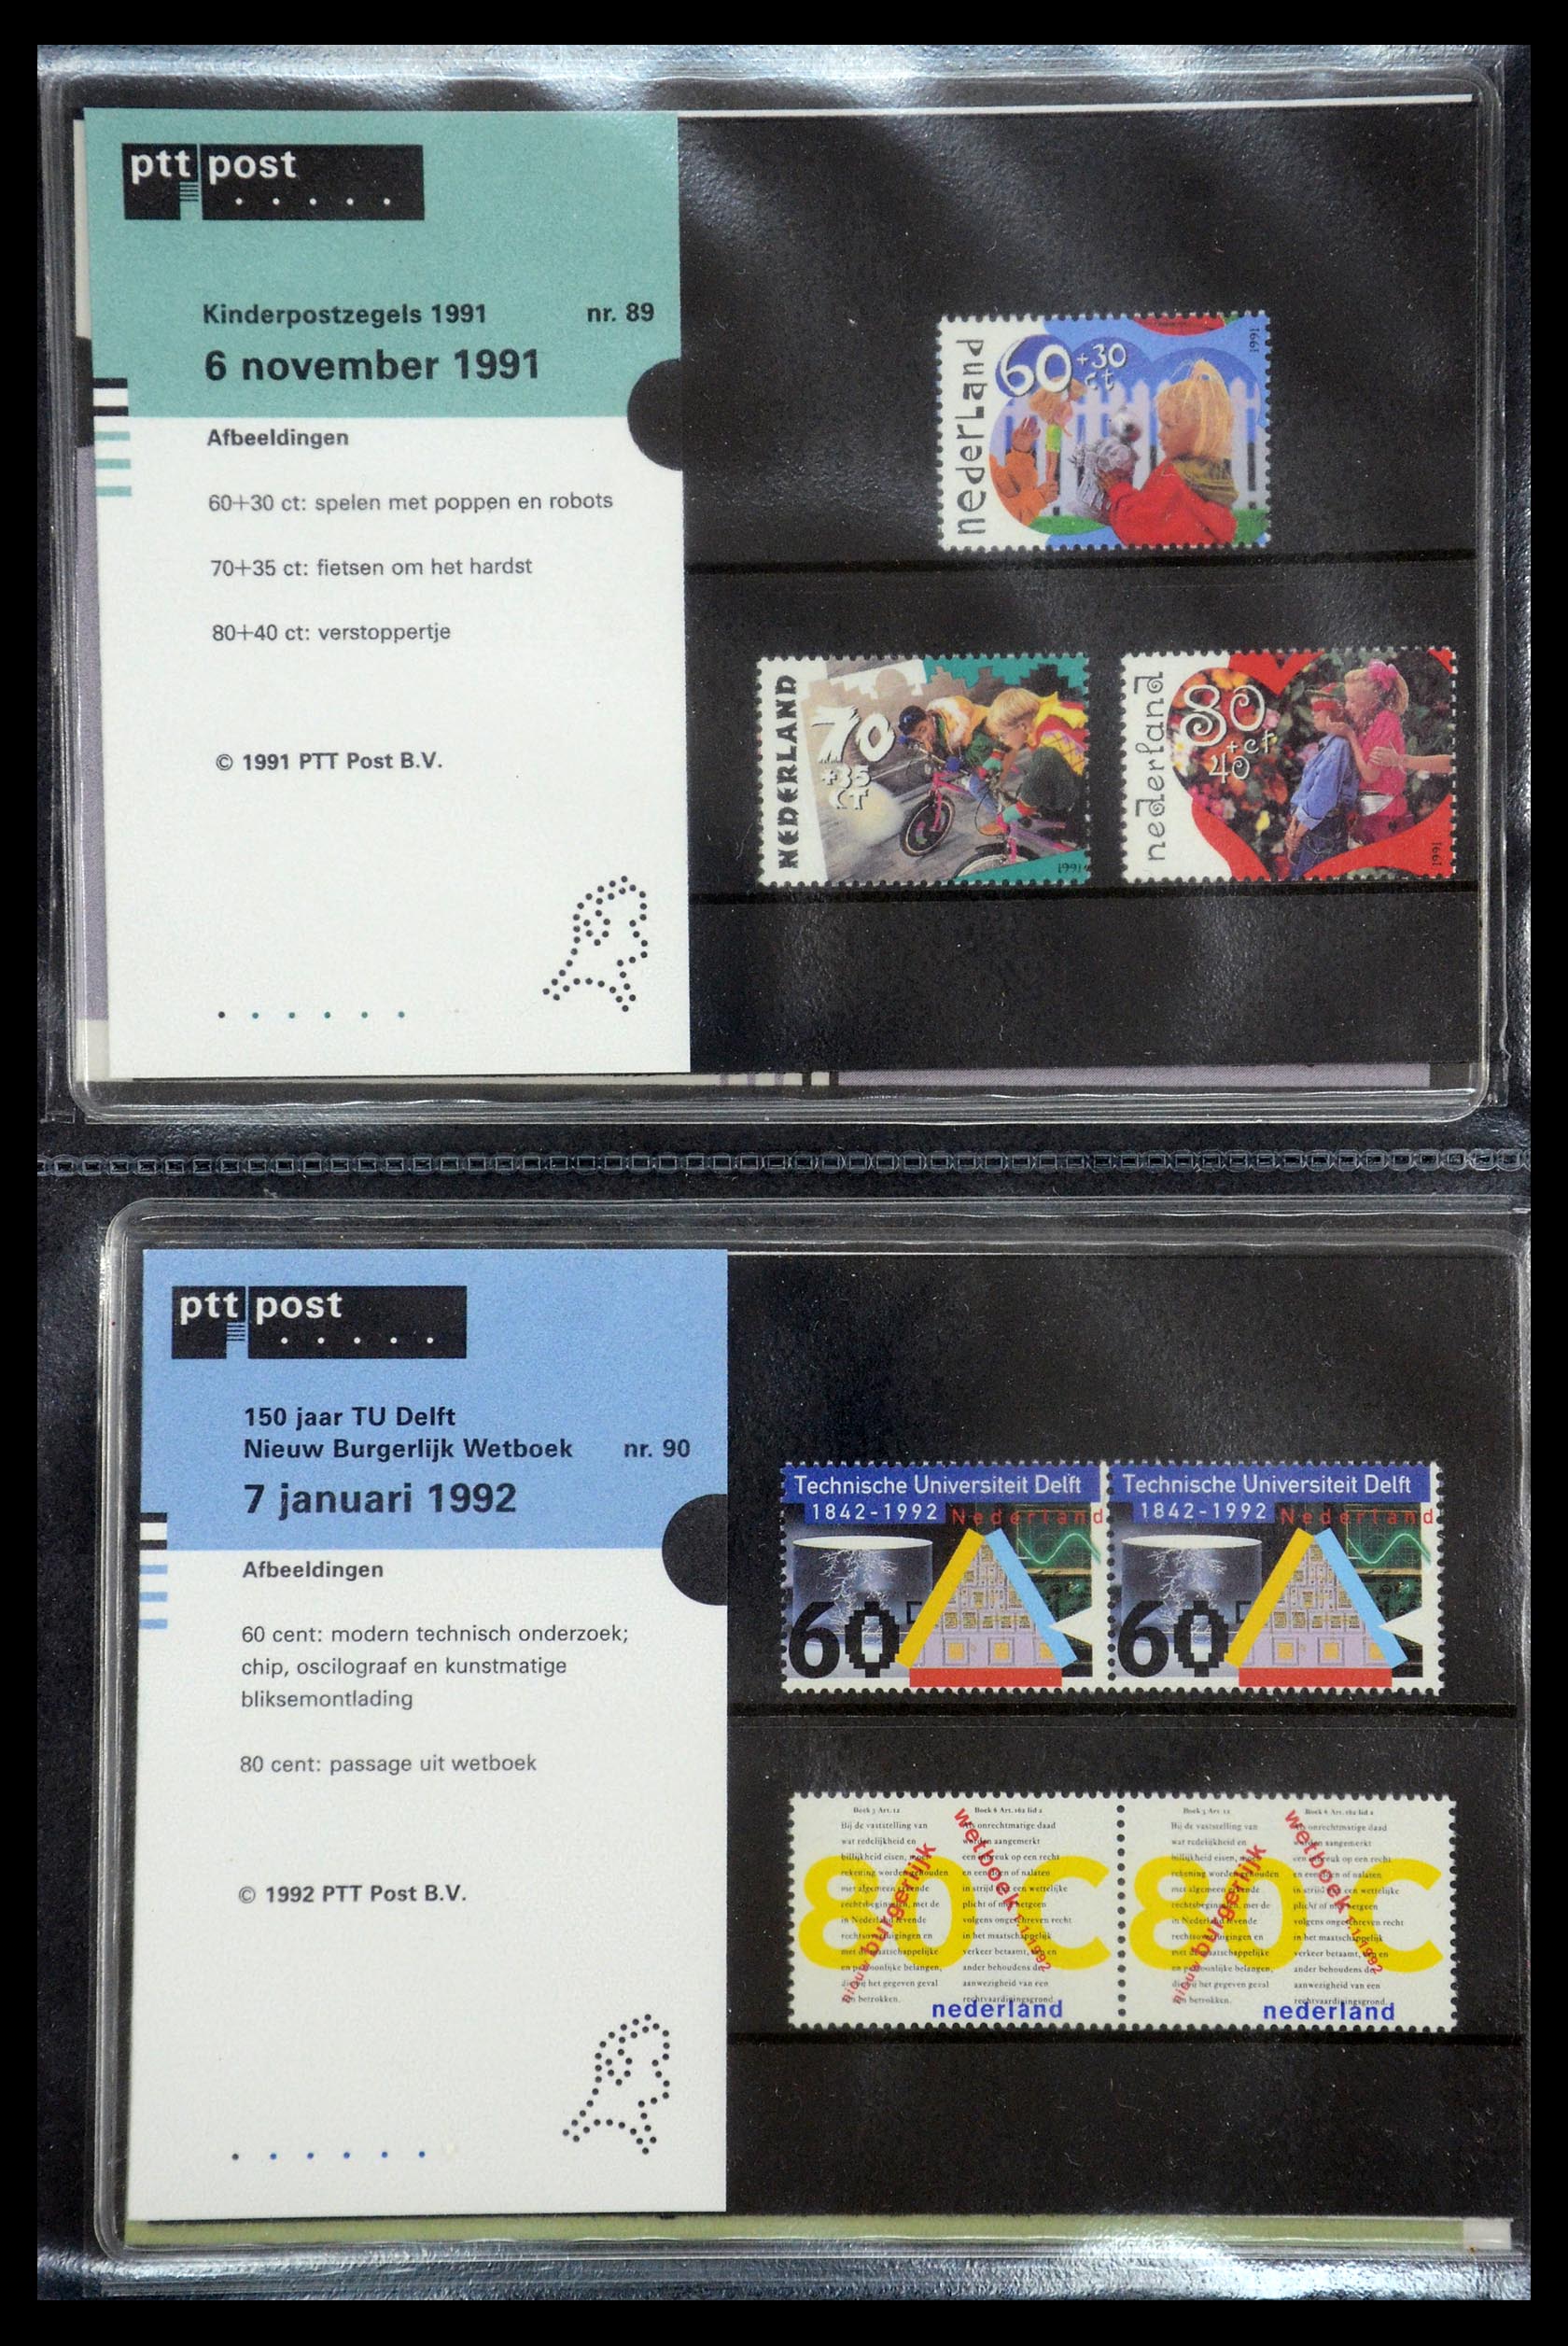 35187 045 - Stamp Collection 35187 Netherlands PTT presentation packs 1982-2019!